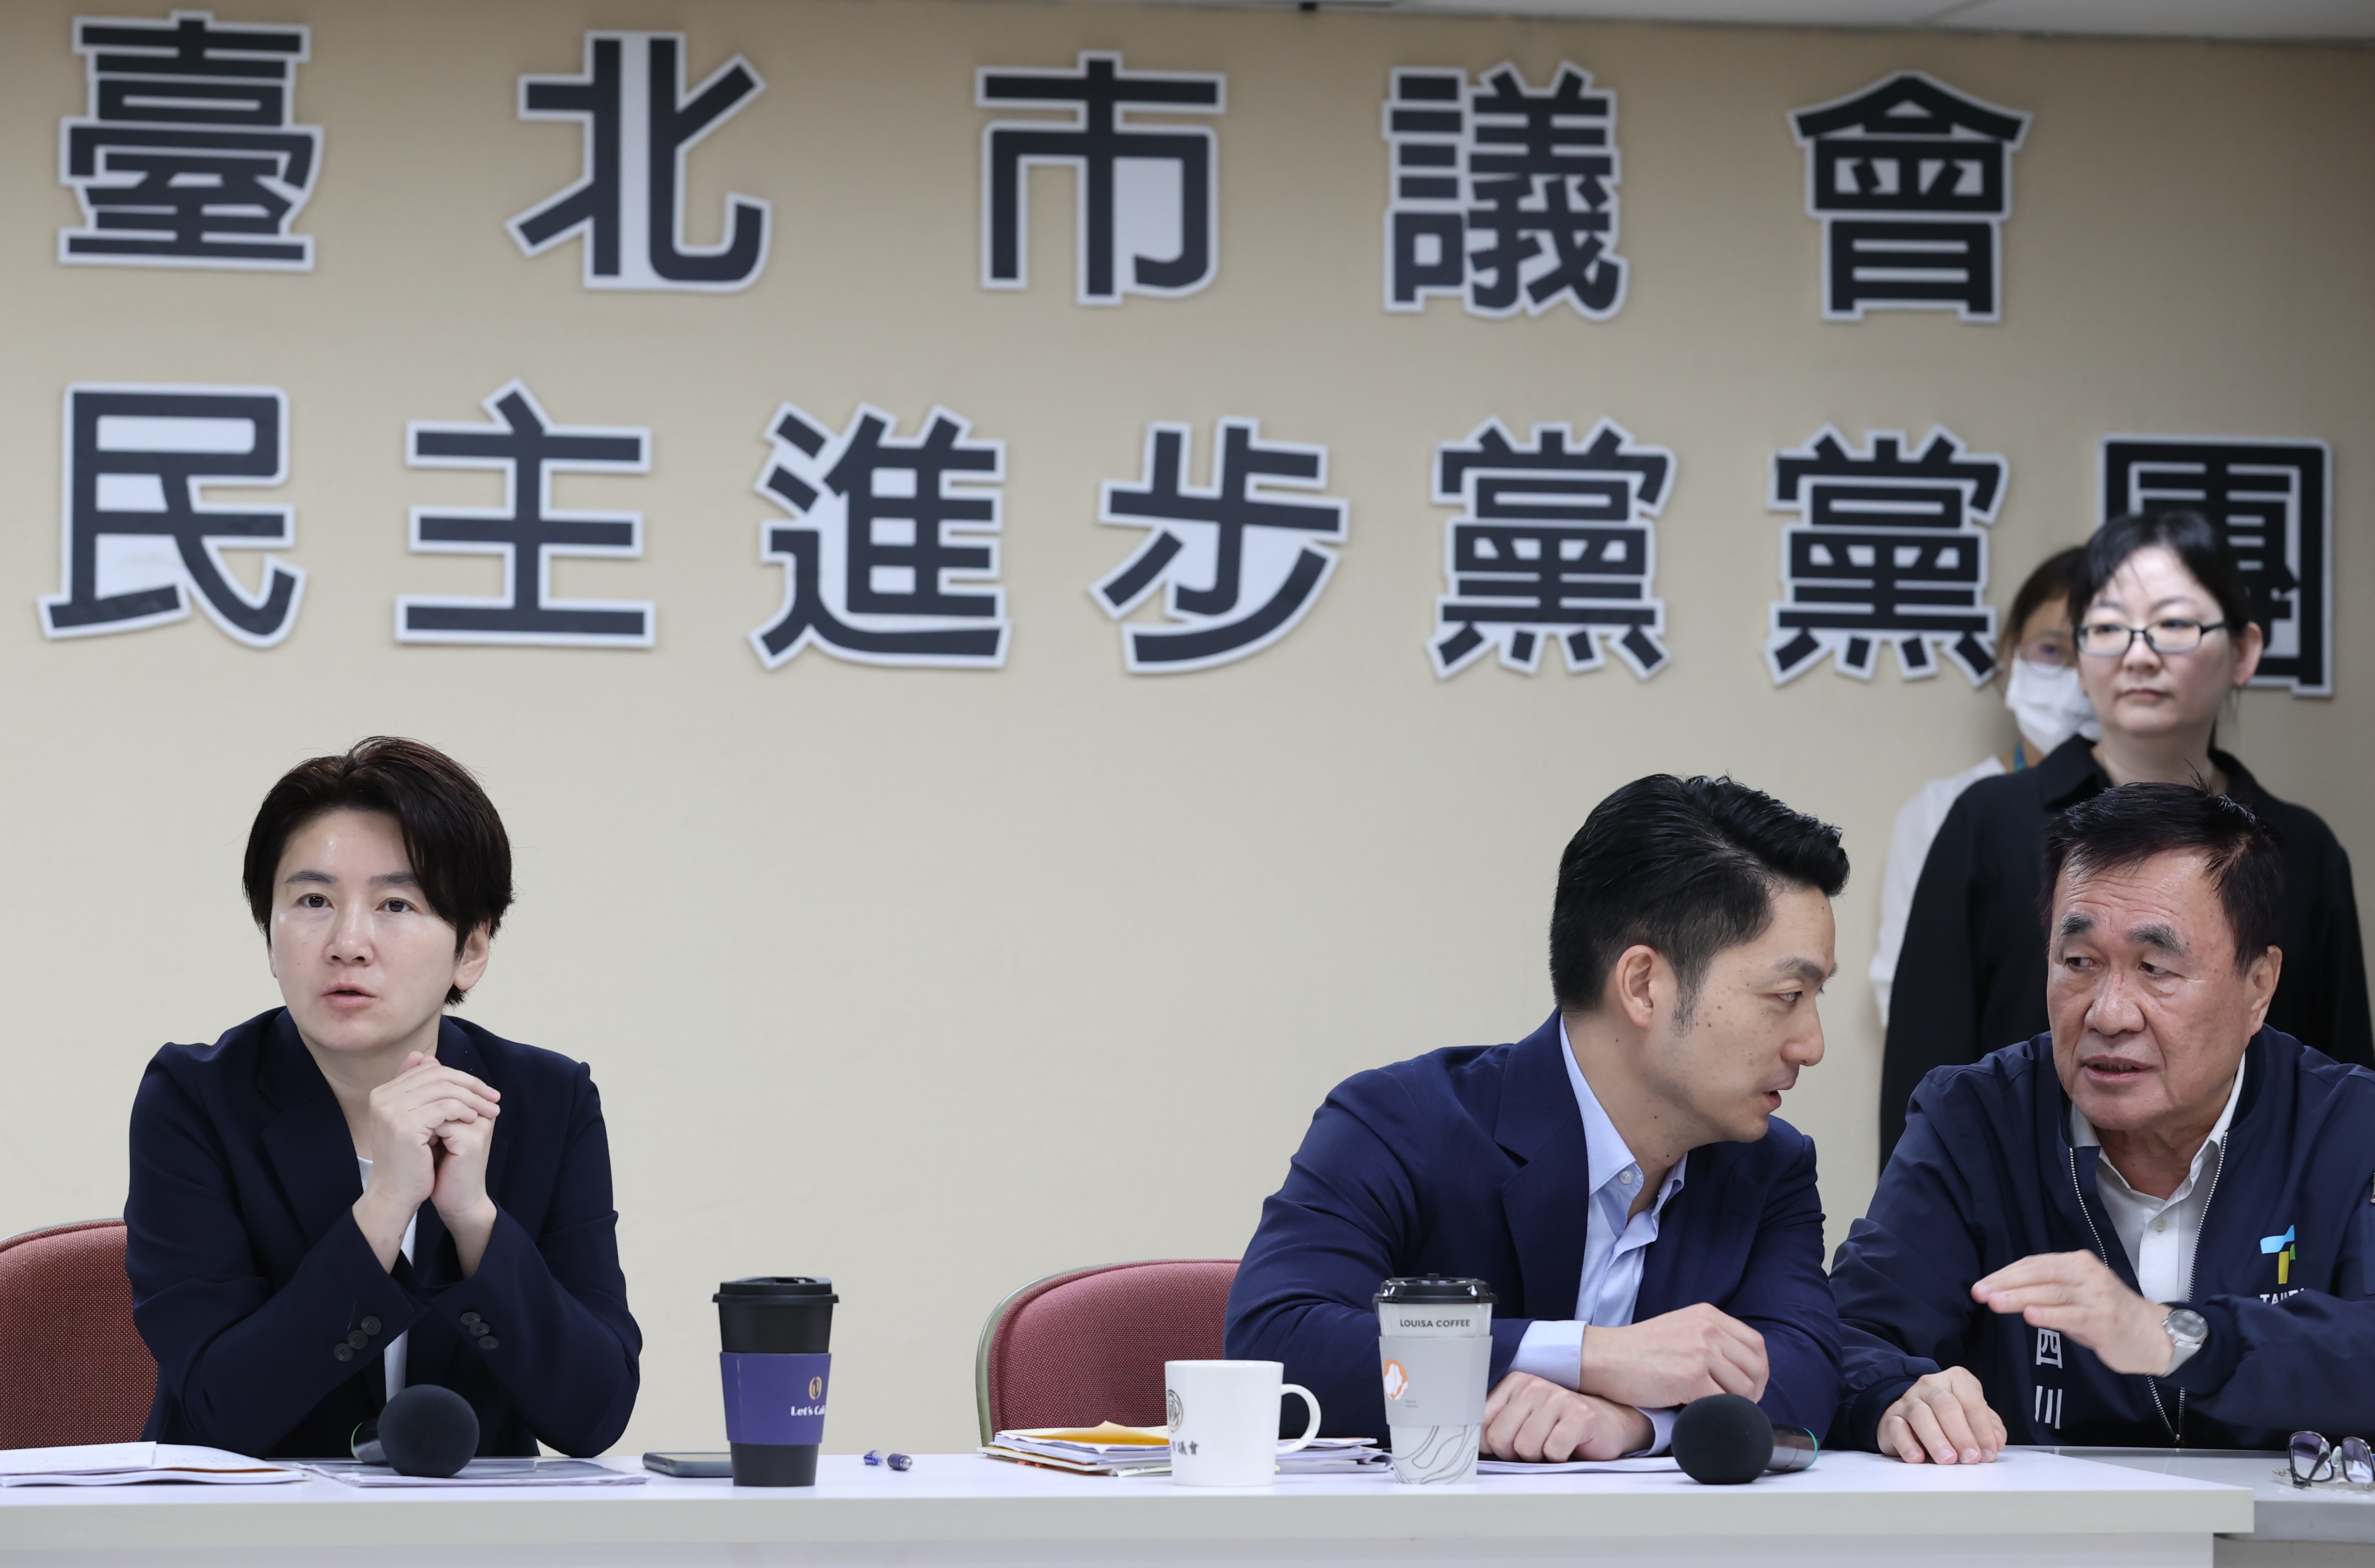 台北市长蒋万安中午前往台北市议会民进党团说明重大法议案。记者曾学仁／摄影